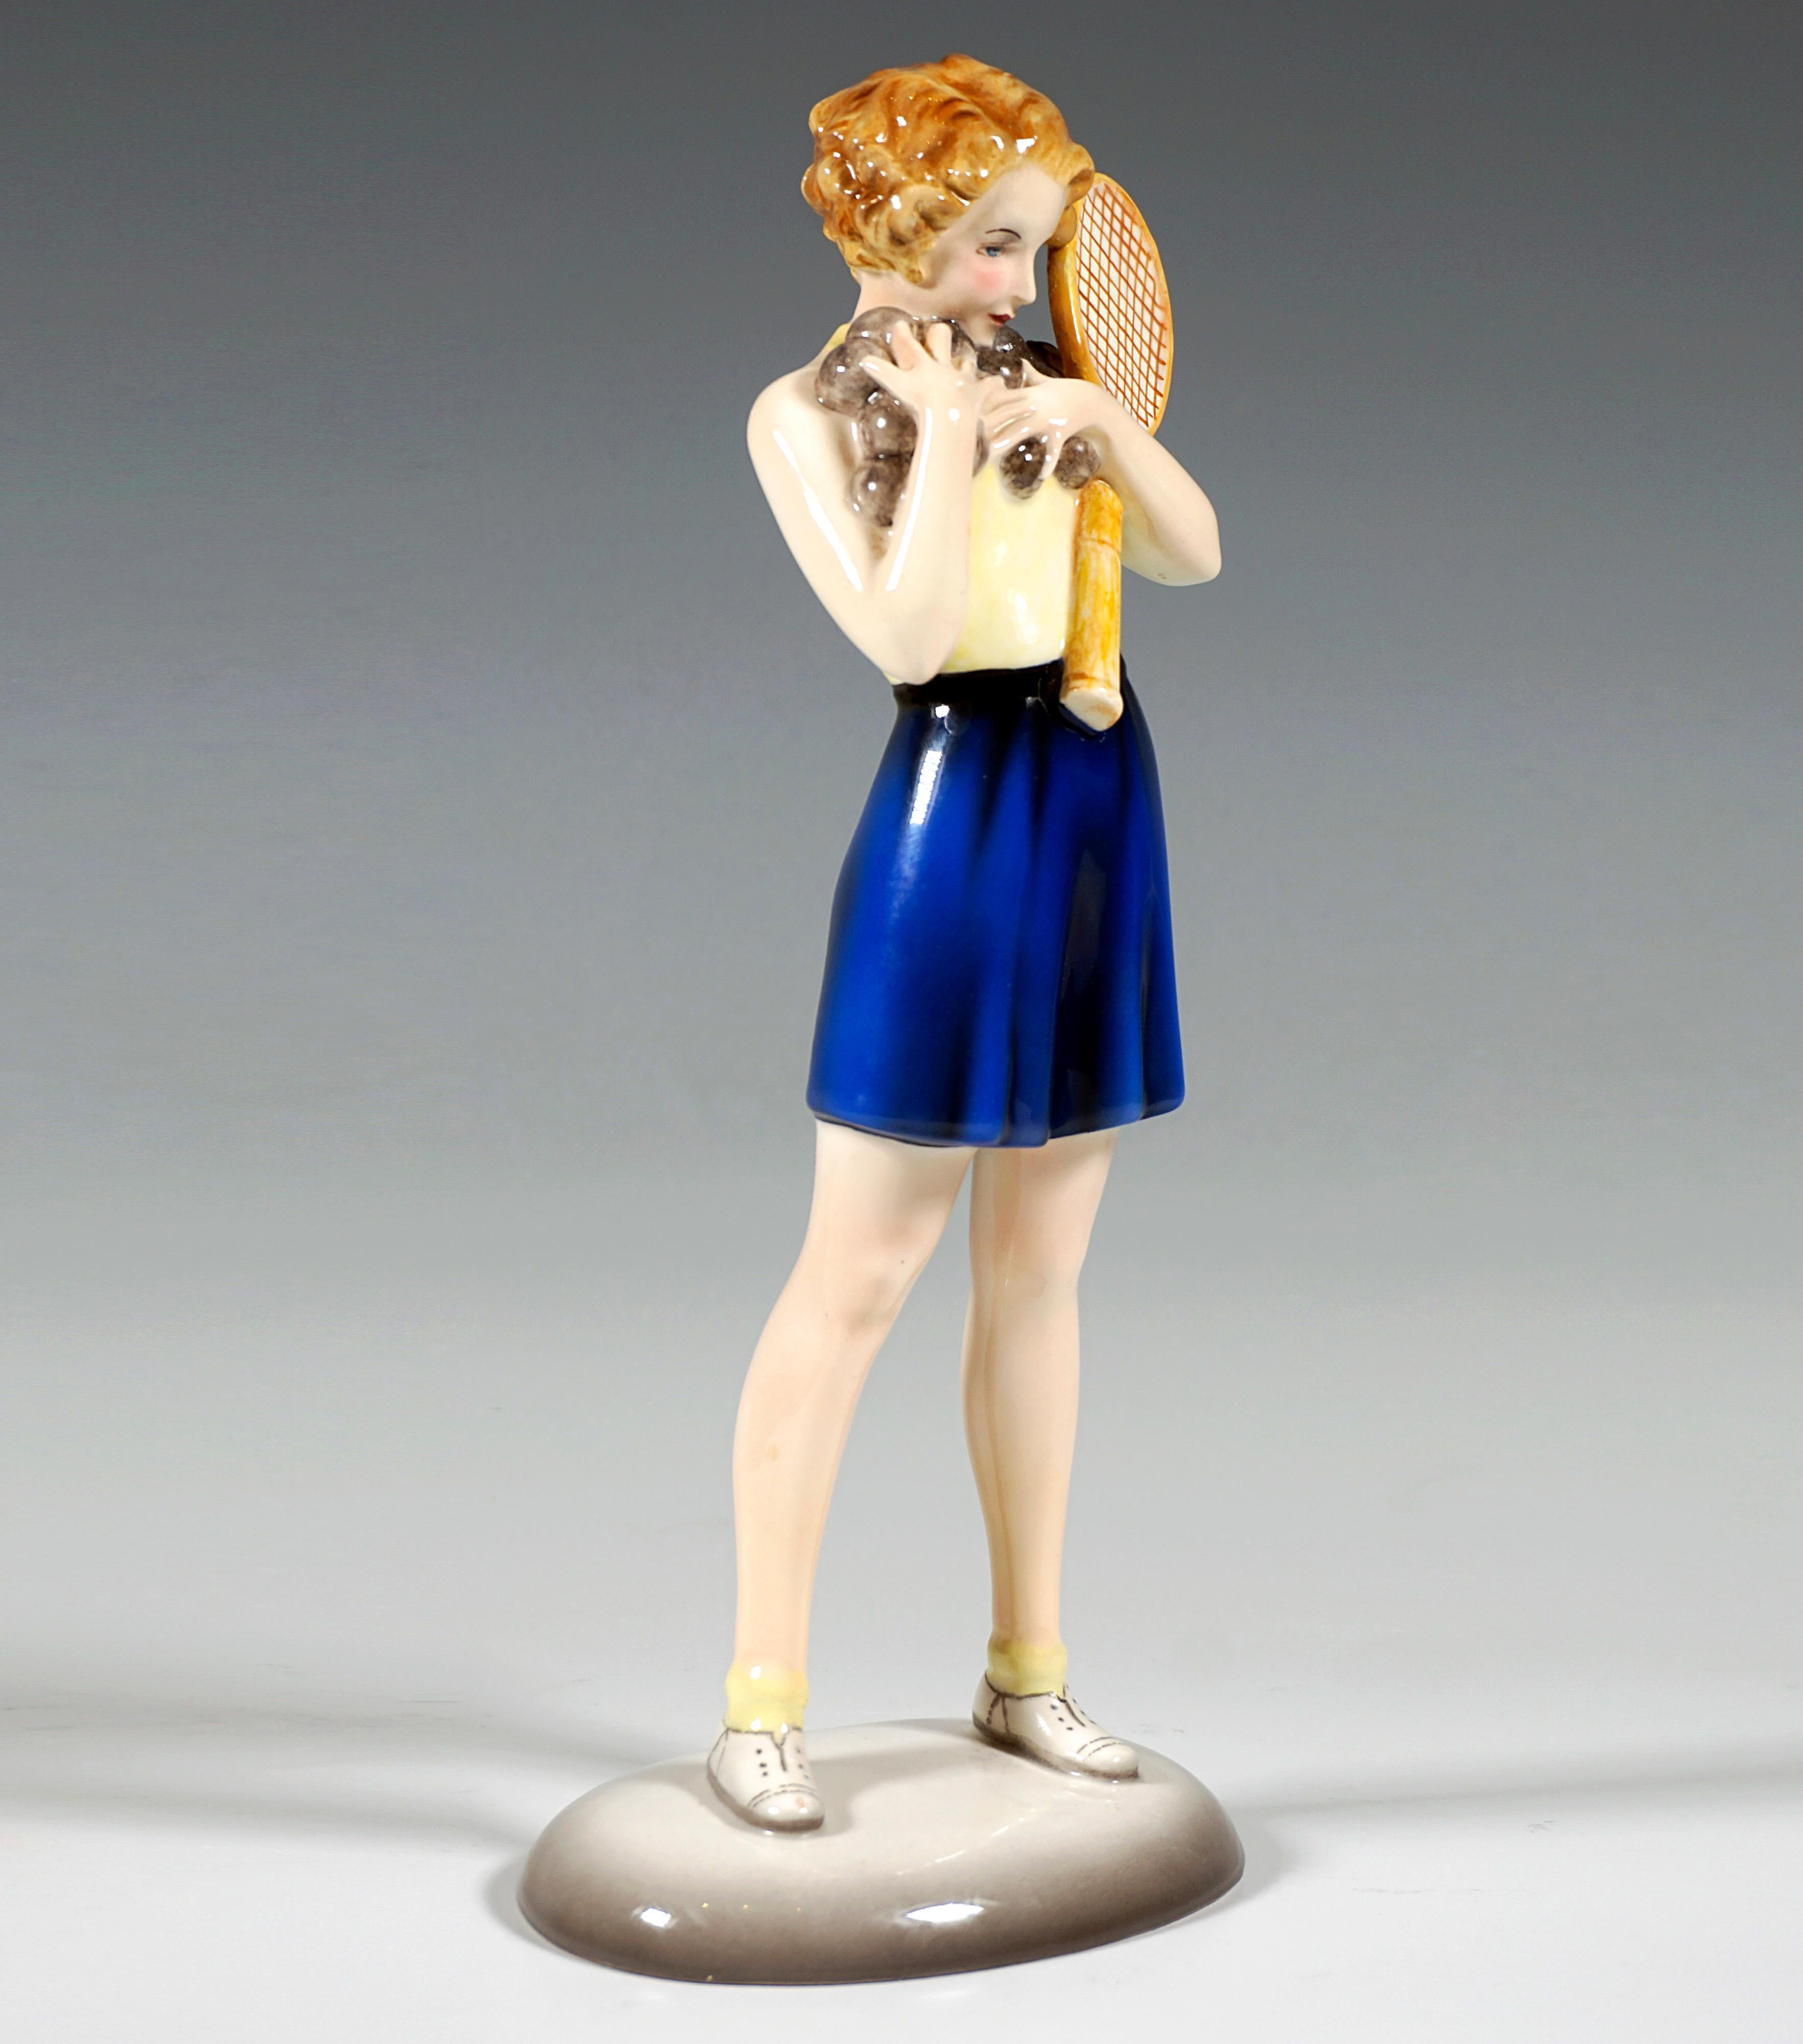 Très rare figurine en céramique de Goldscheider Vienna des années 1930 :
Jeune fille en tenue de tennis : haut de couleur claire dos nu, pantalon bleu foncé, large et court et chaussures de tennis blanches, debout, jambes écartées, tenant une